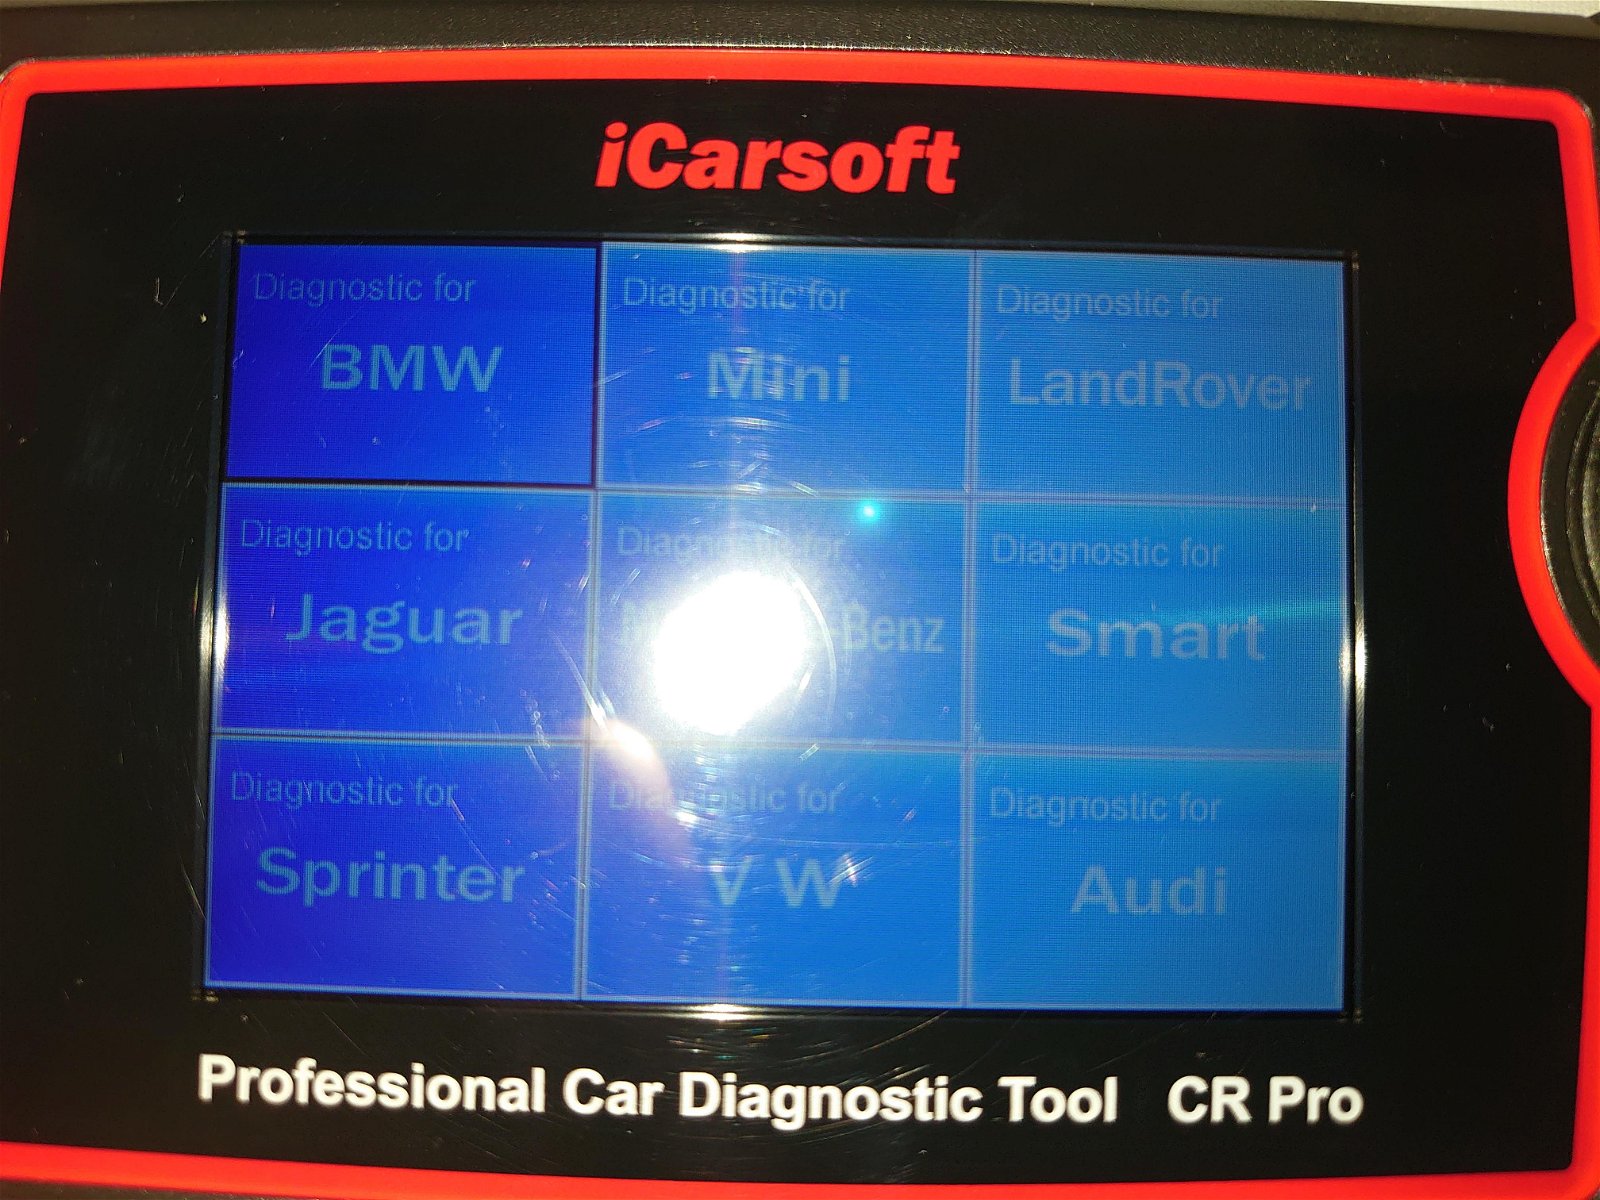 iCarsoft LR V3.0, Land Rover / Jaguar JLR